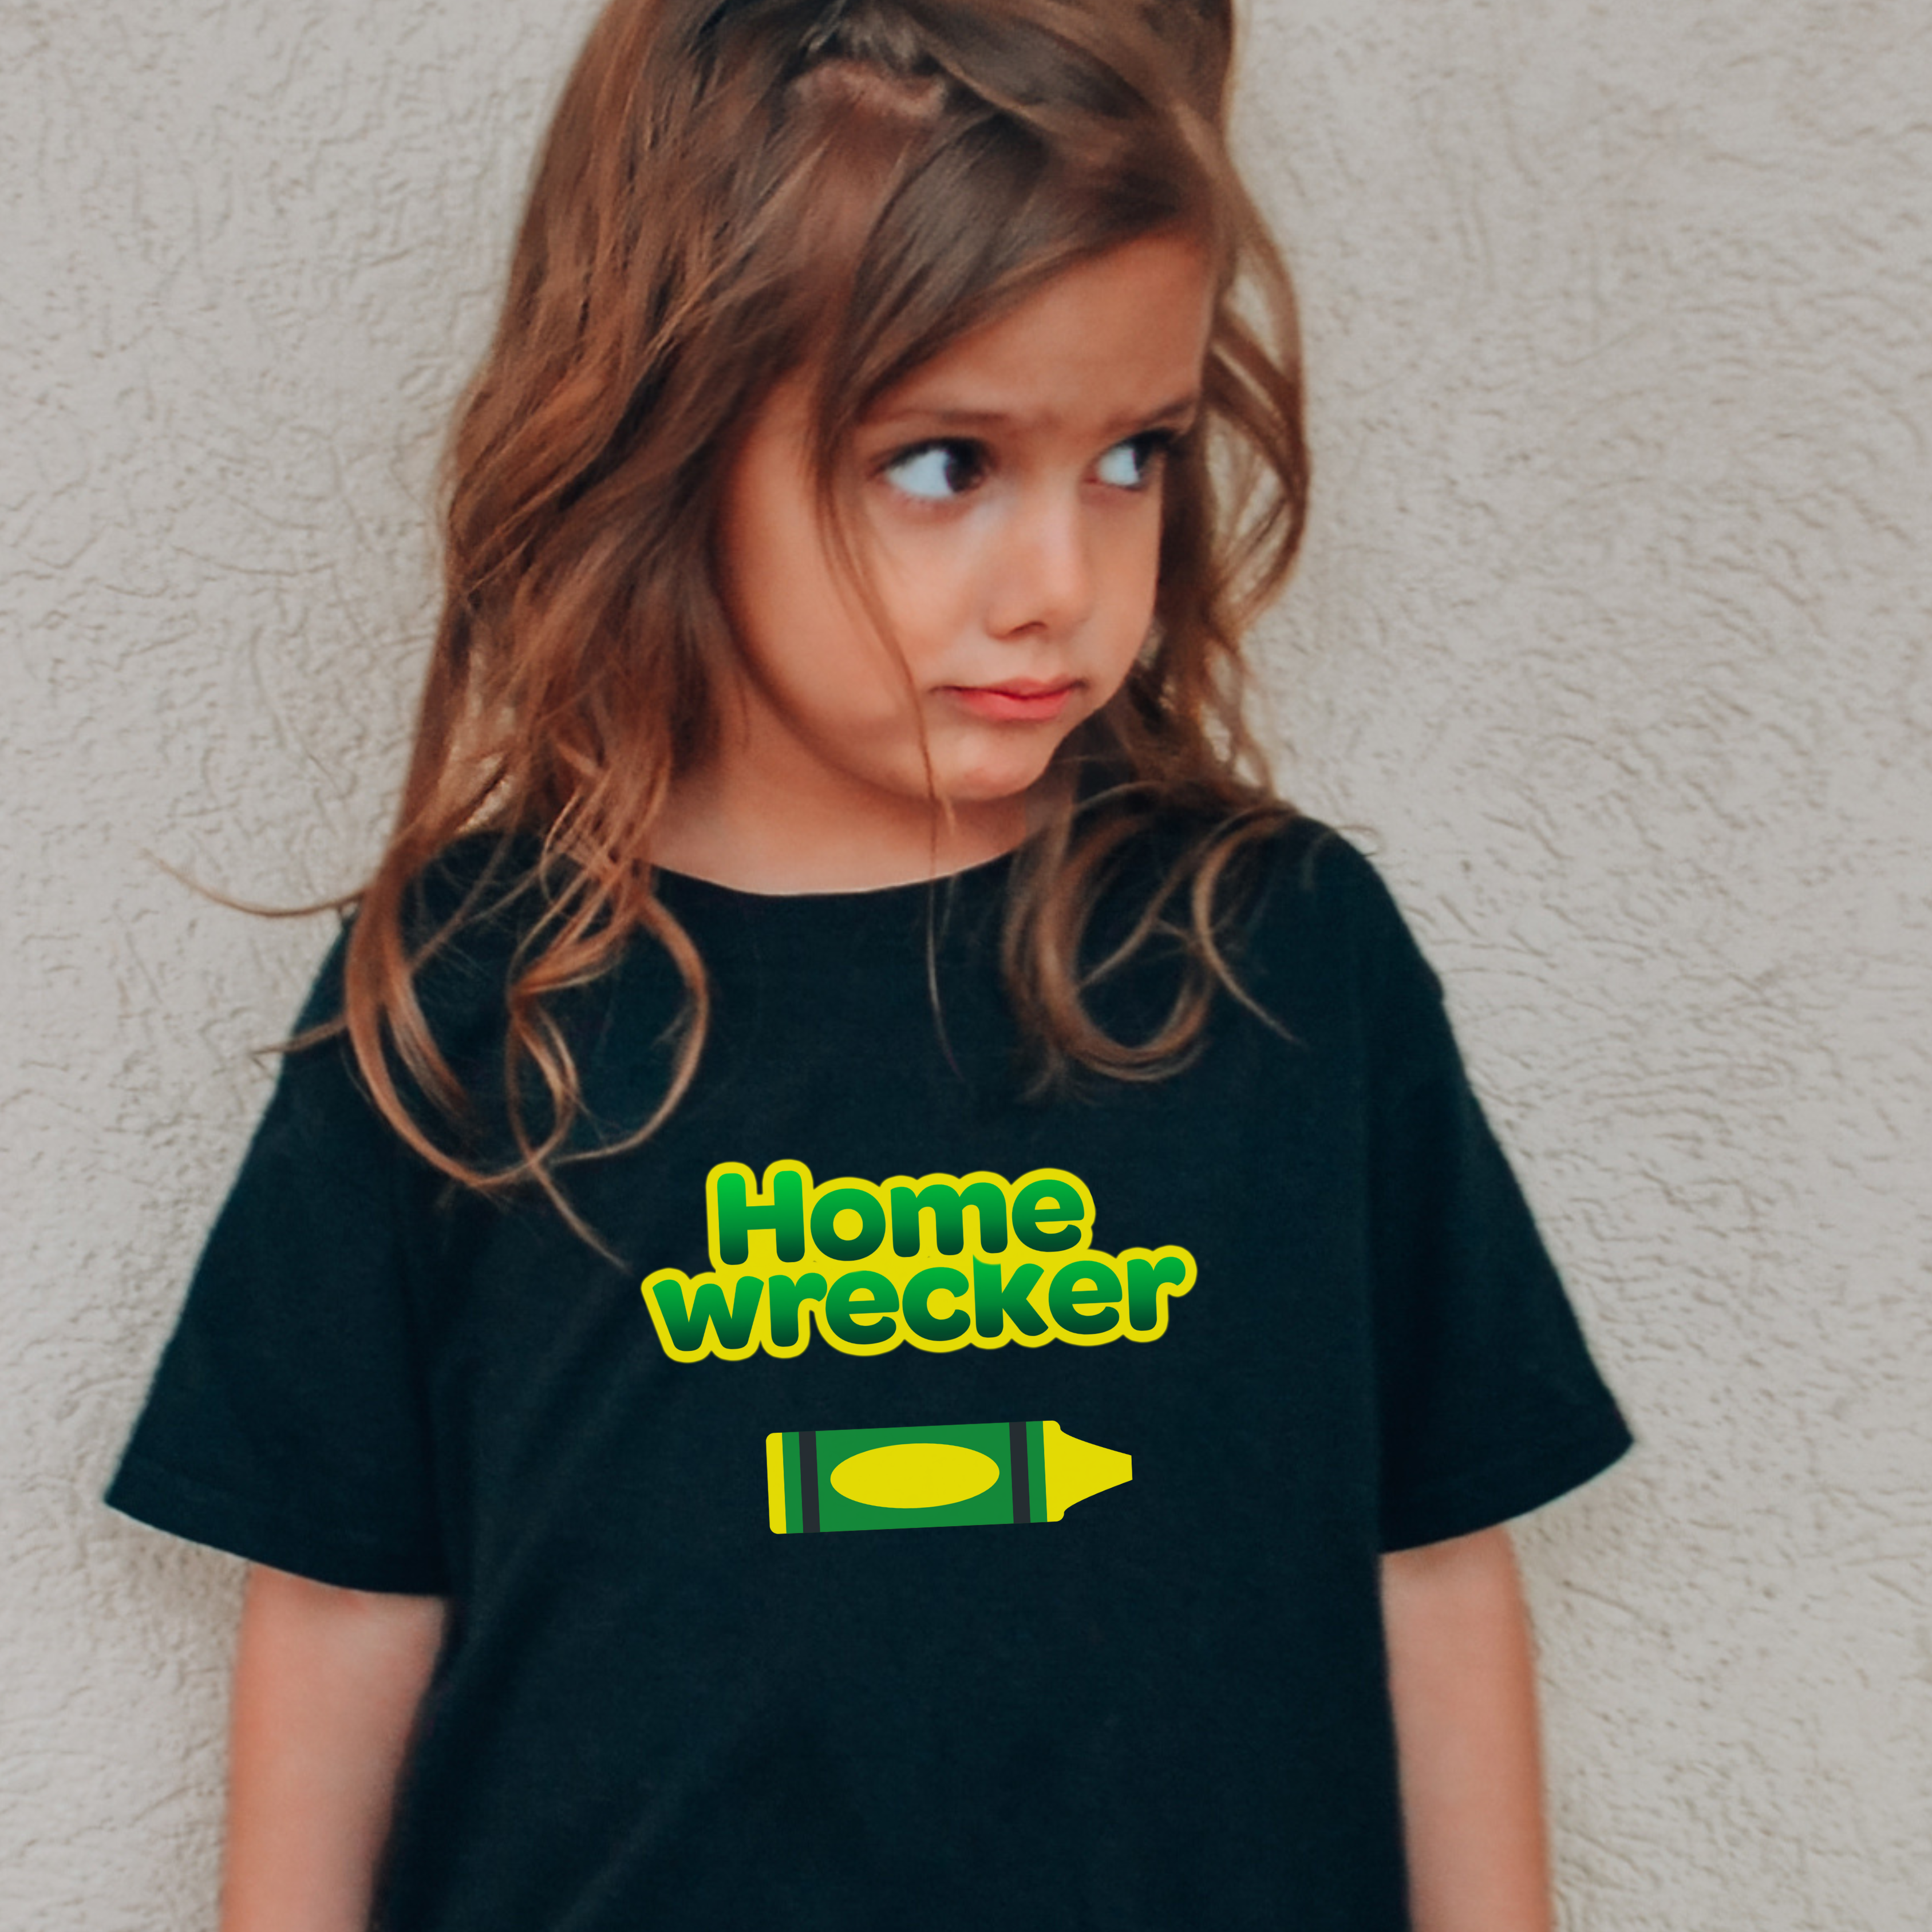 Home Wrecker Kids T Shirt